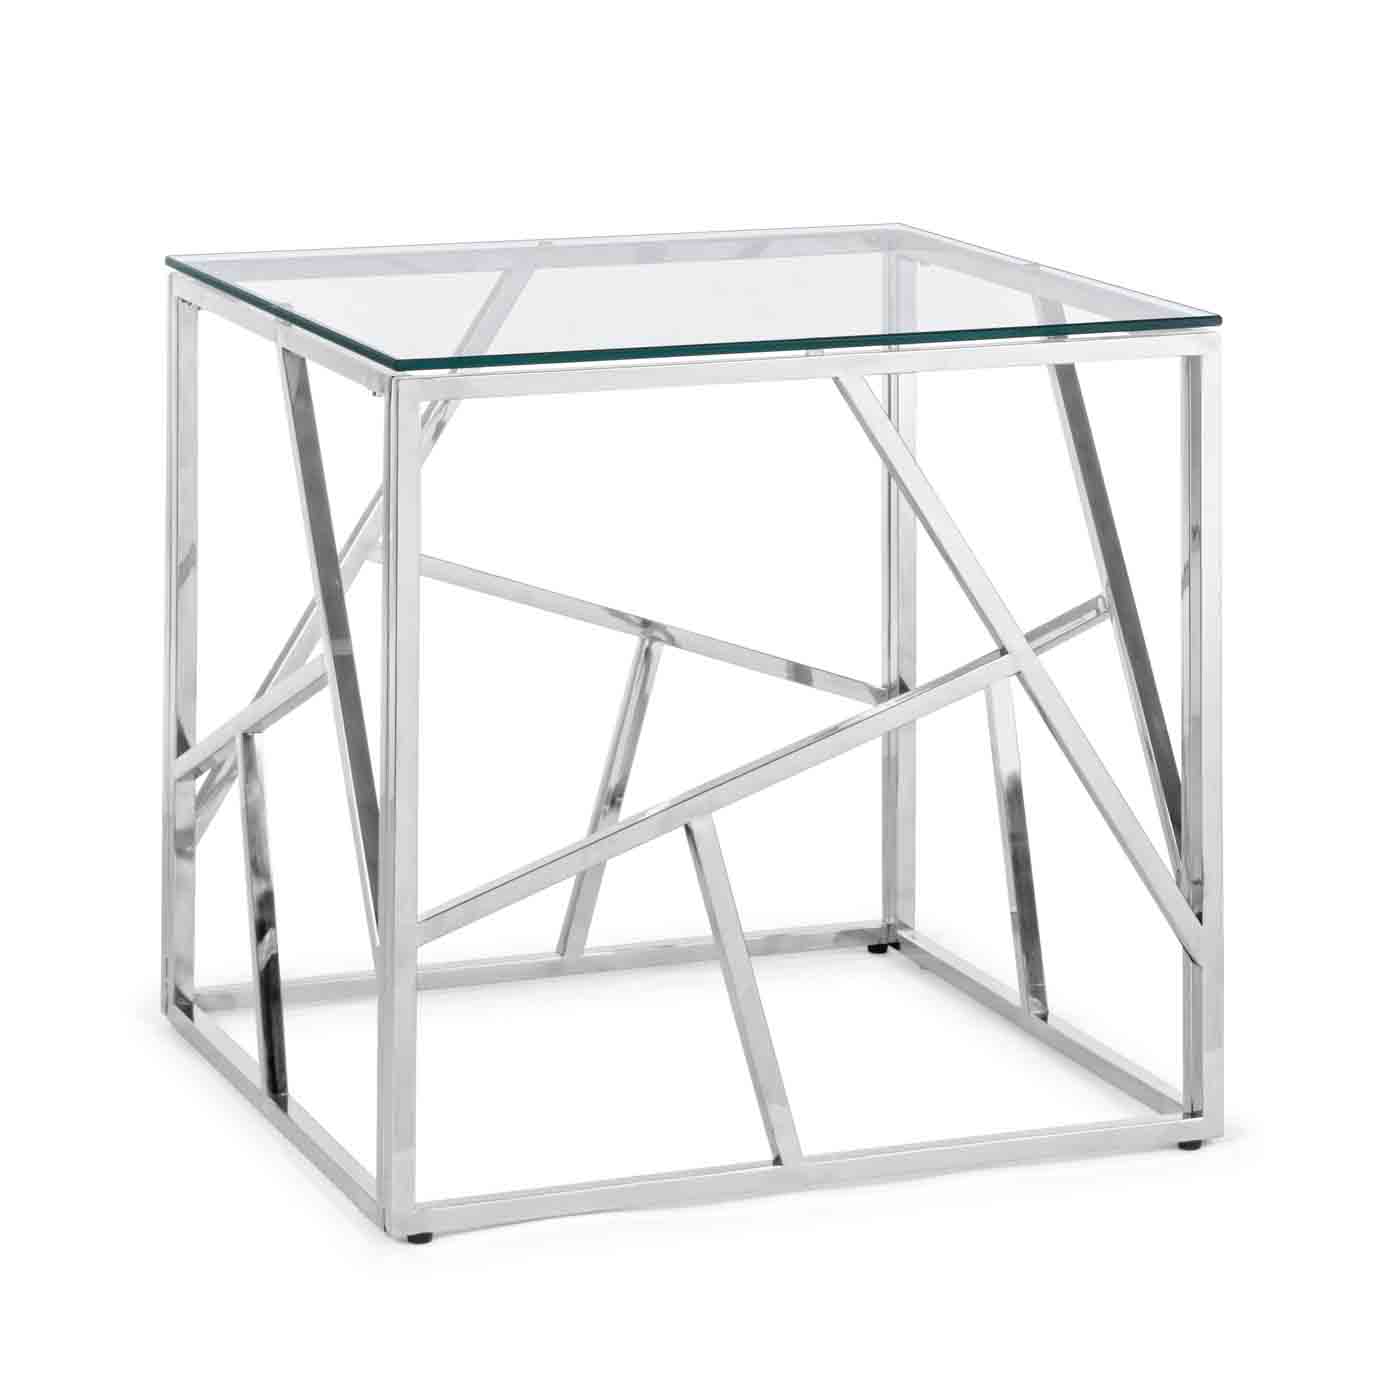 Beistelltisch Rayan in einem modernen Design. Hergestellt aus Metall  in einem silbernen Farbton. Die Tischplatte ist aus Glas. Marke Bizotto.